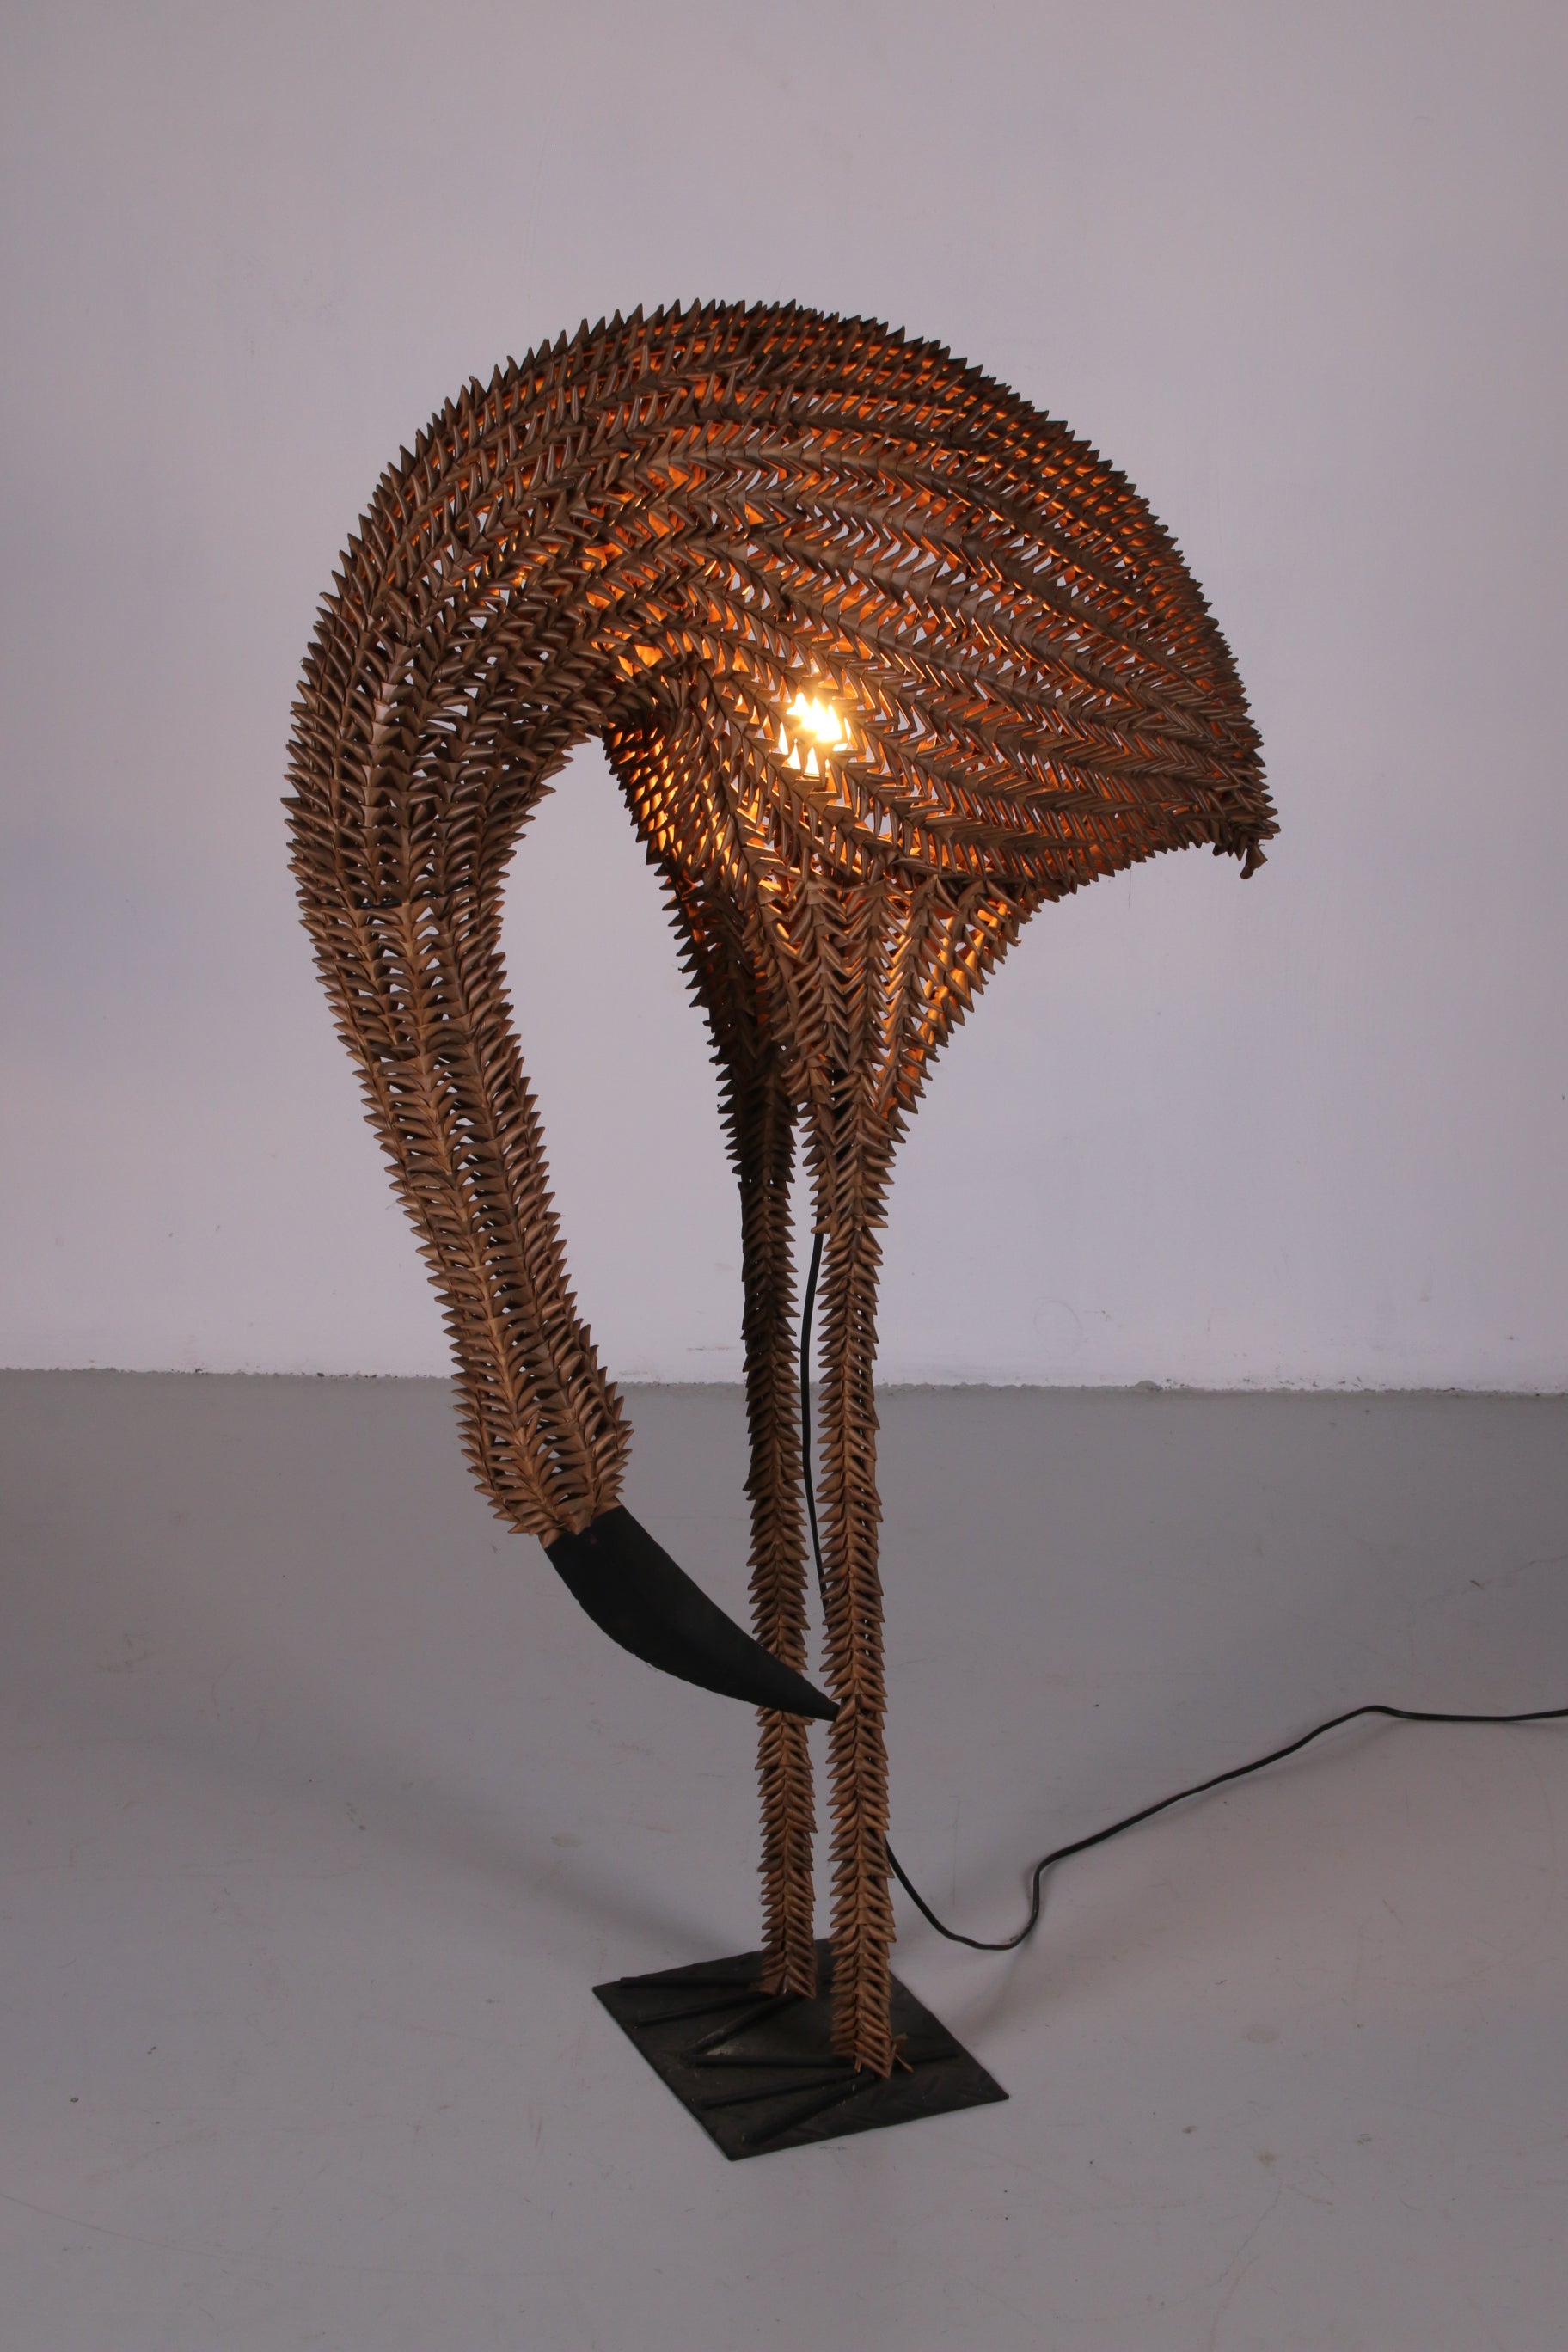 Grote Bamboo Vloerlamp van een vogel gemaakt in de jaren 60 In de USA voorkant licht aan